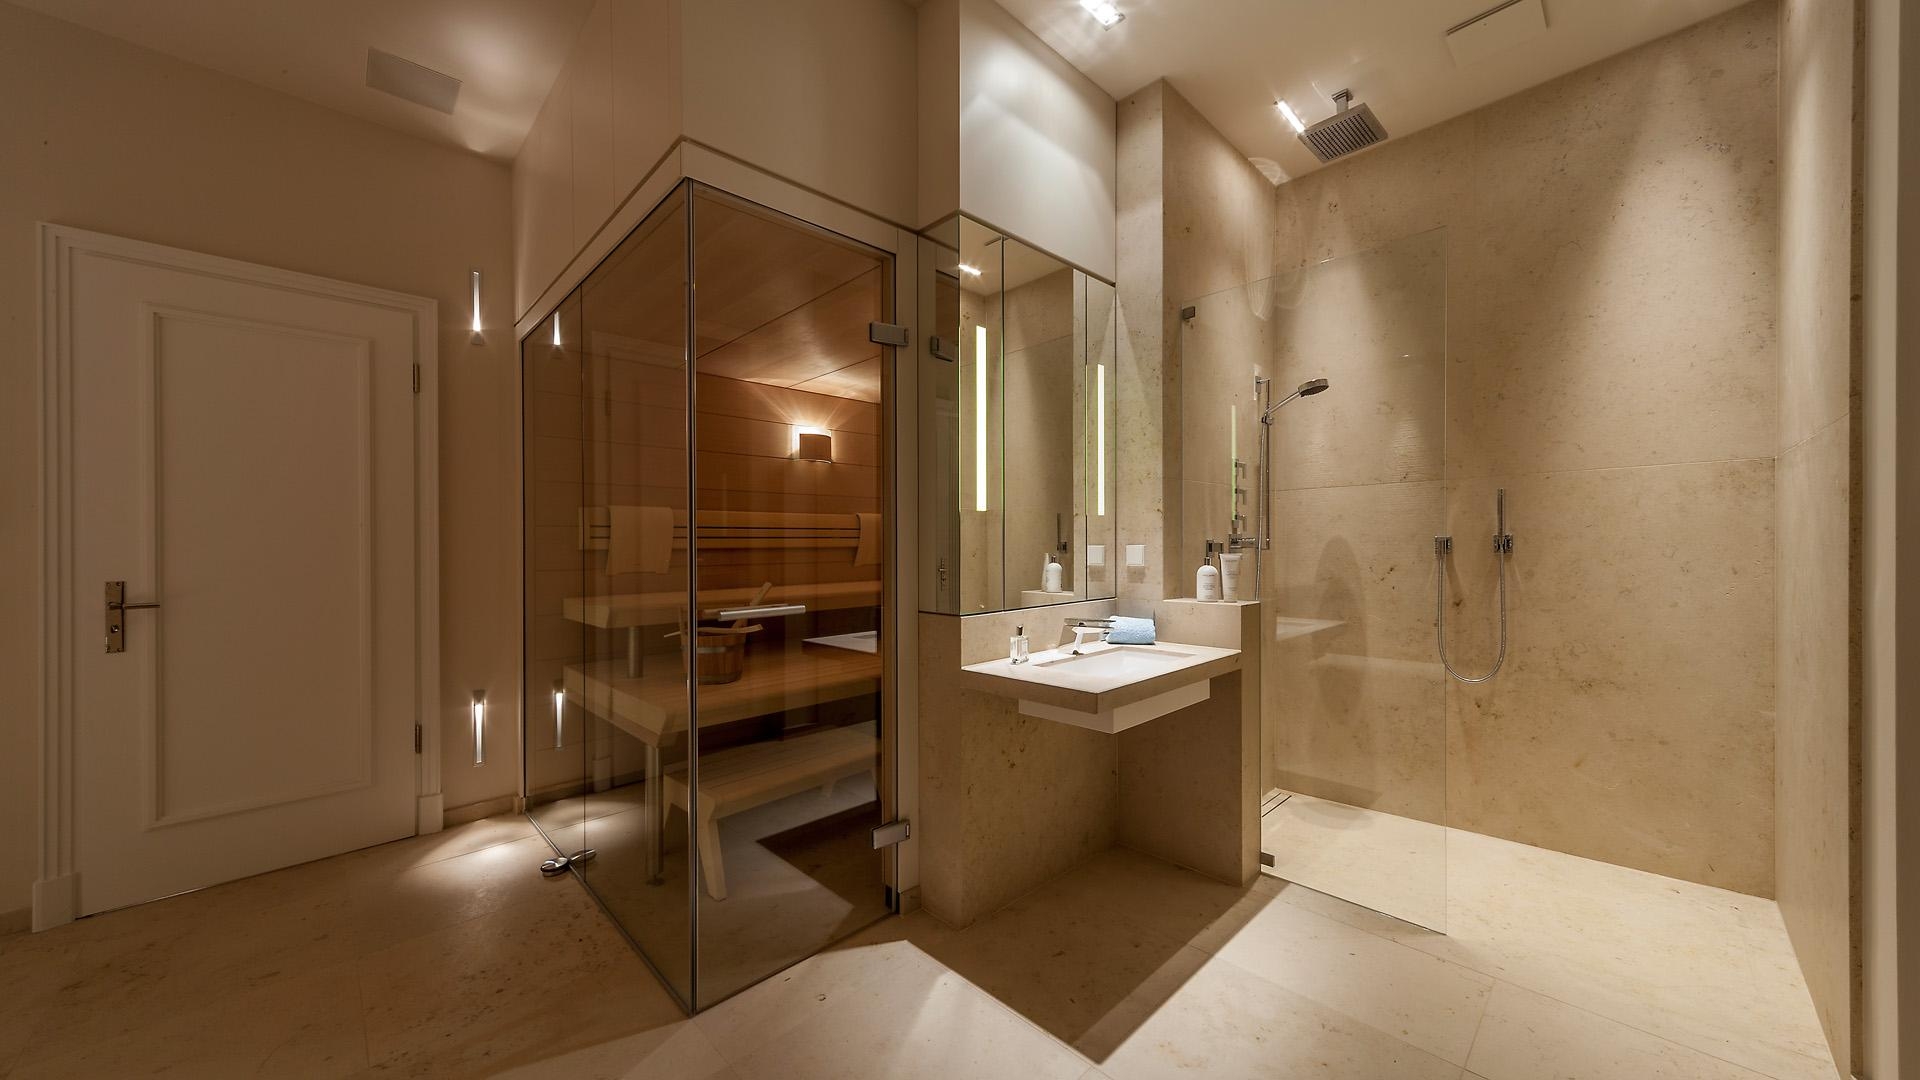 -Anzeige- #bestebadstudios #badezimmer #bad #dusche #waschbecken #sauna #modernesbadezimmer #wellness